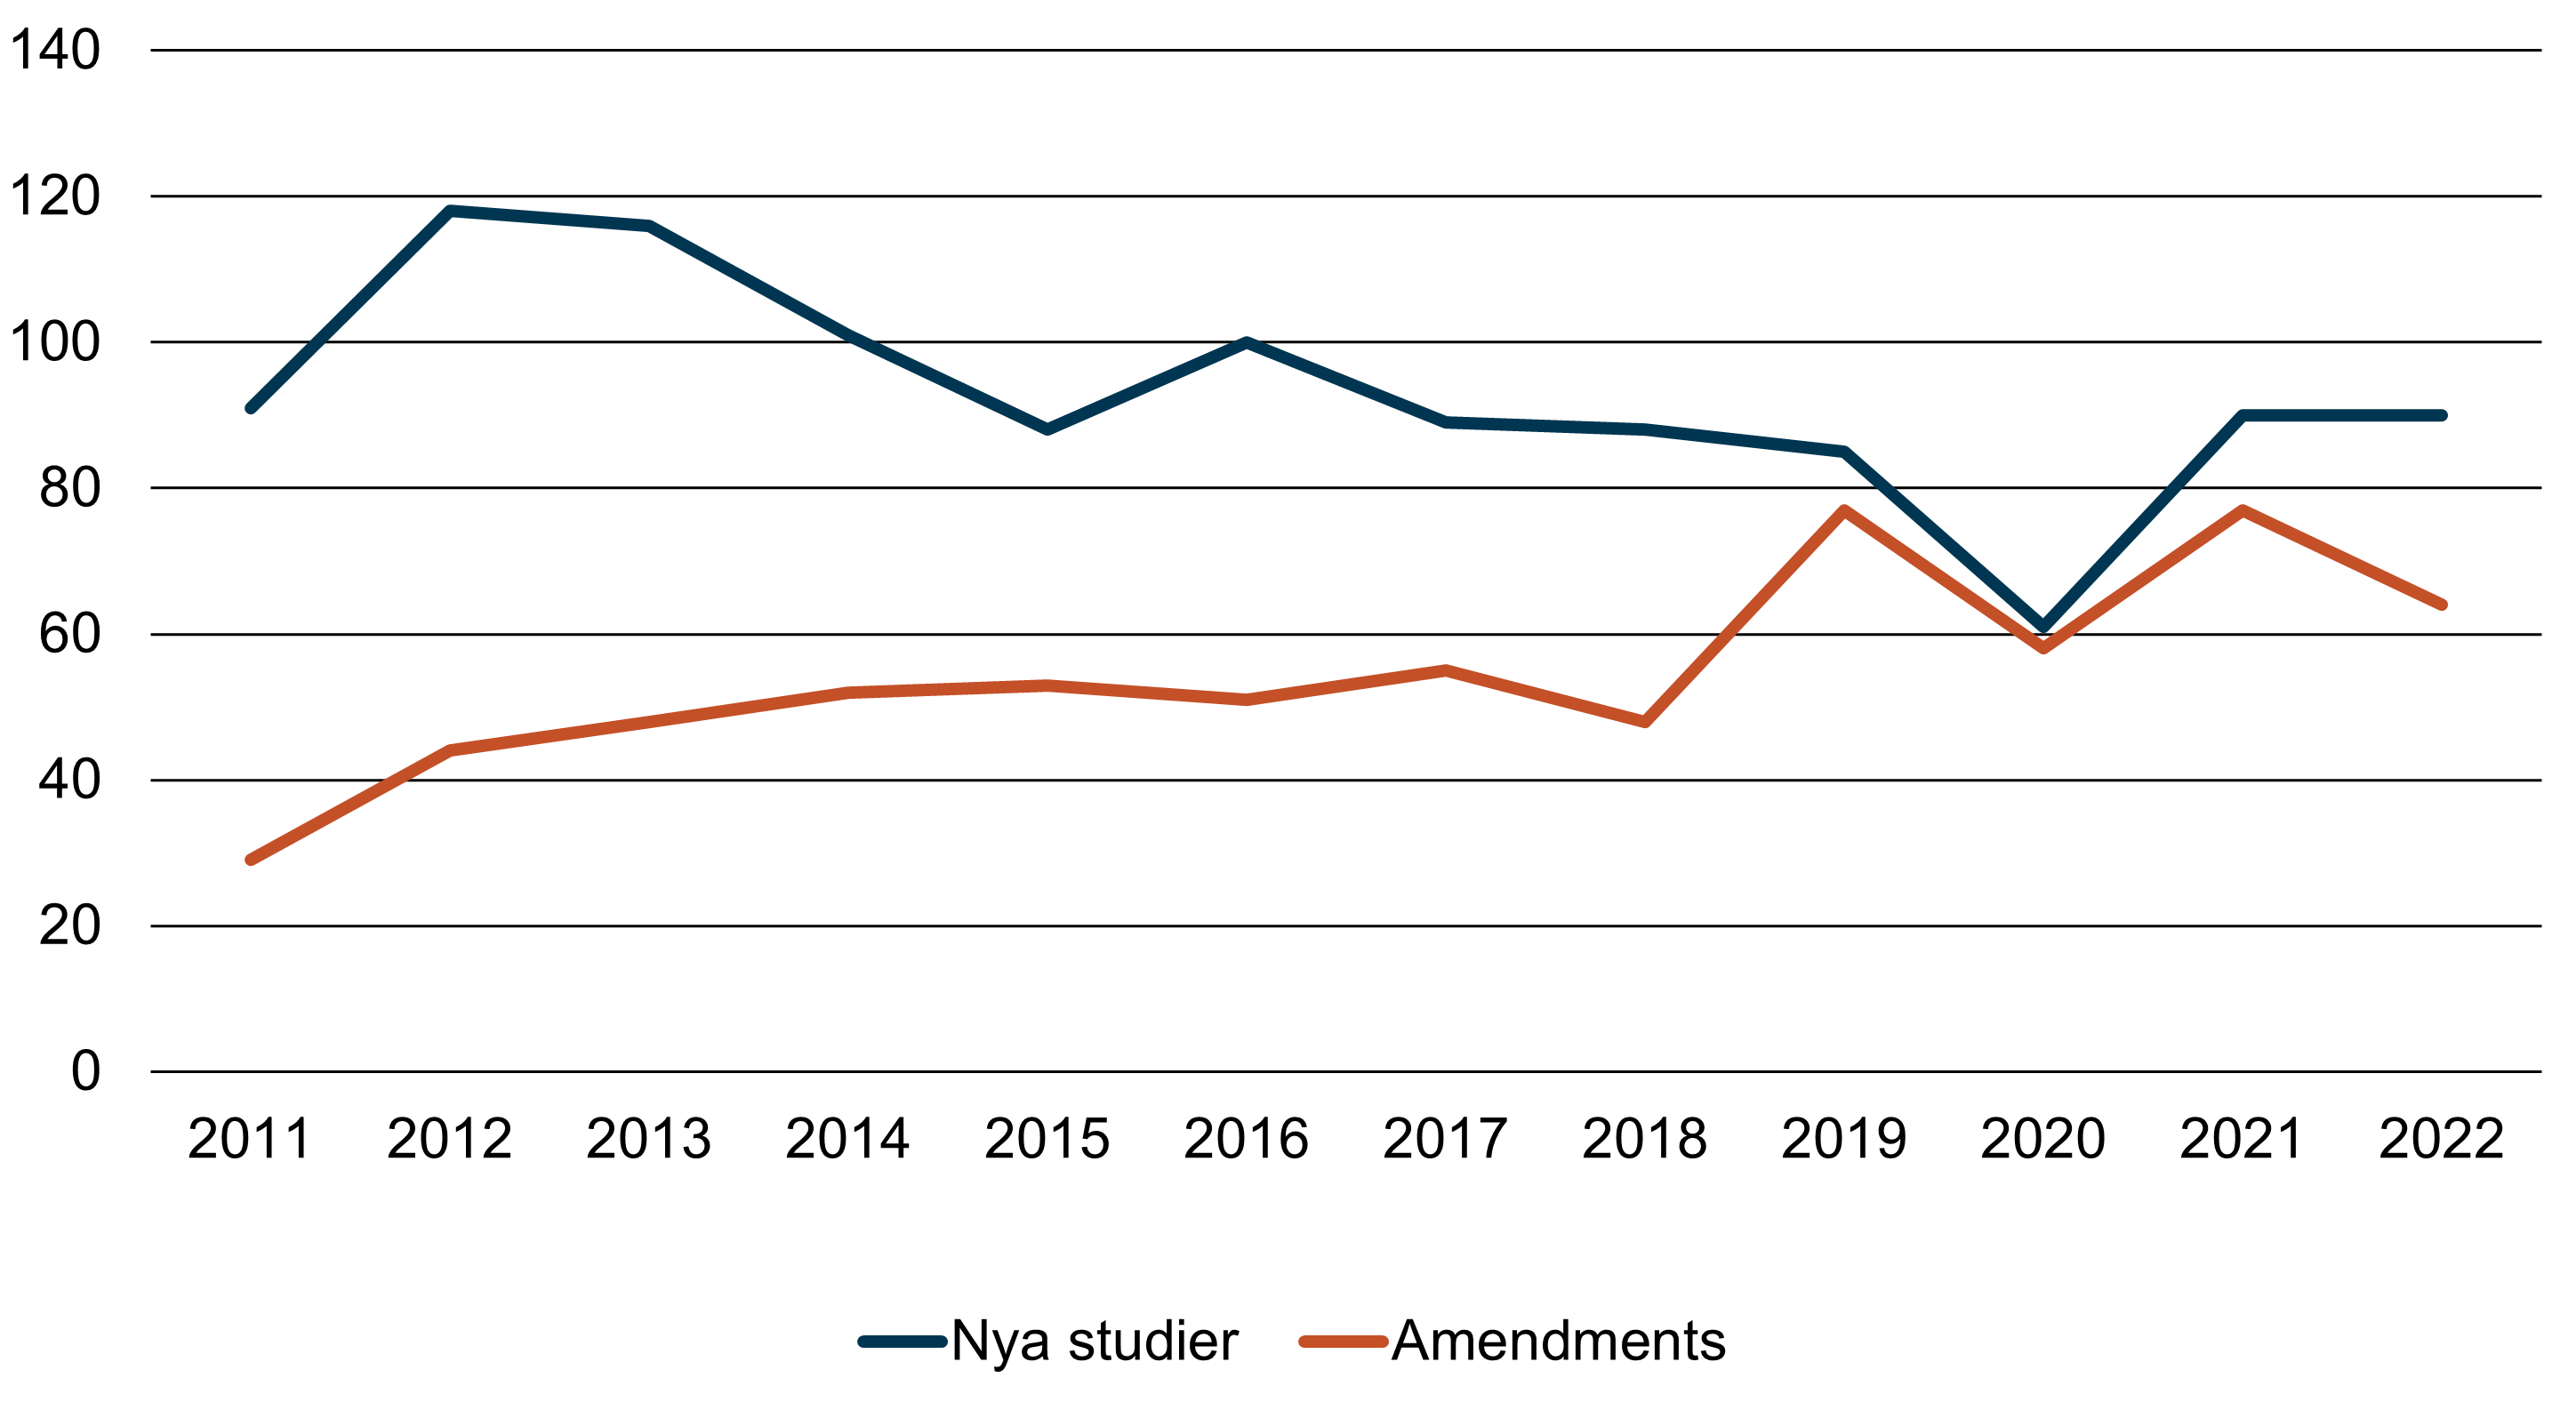 Diagrammet visar antalet nya avtal om kliniska läkemedelsprövningar (i blått) och antalet ändringar av befintliga studieavtal (i orange) som tecknats i Region Skåne per år.